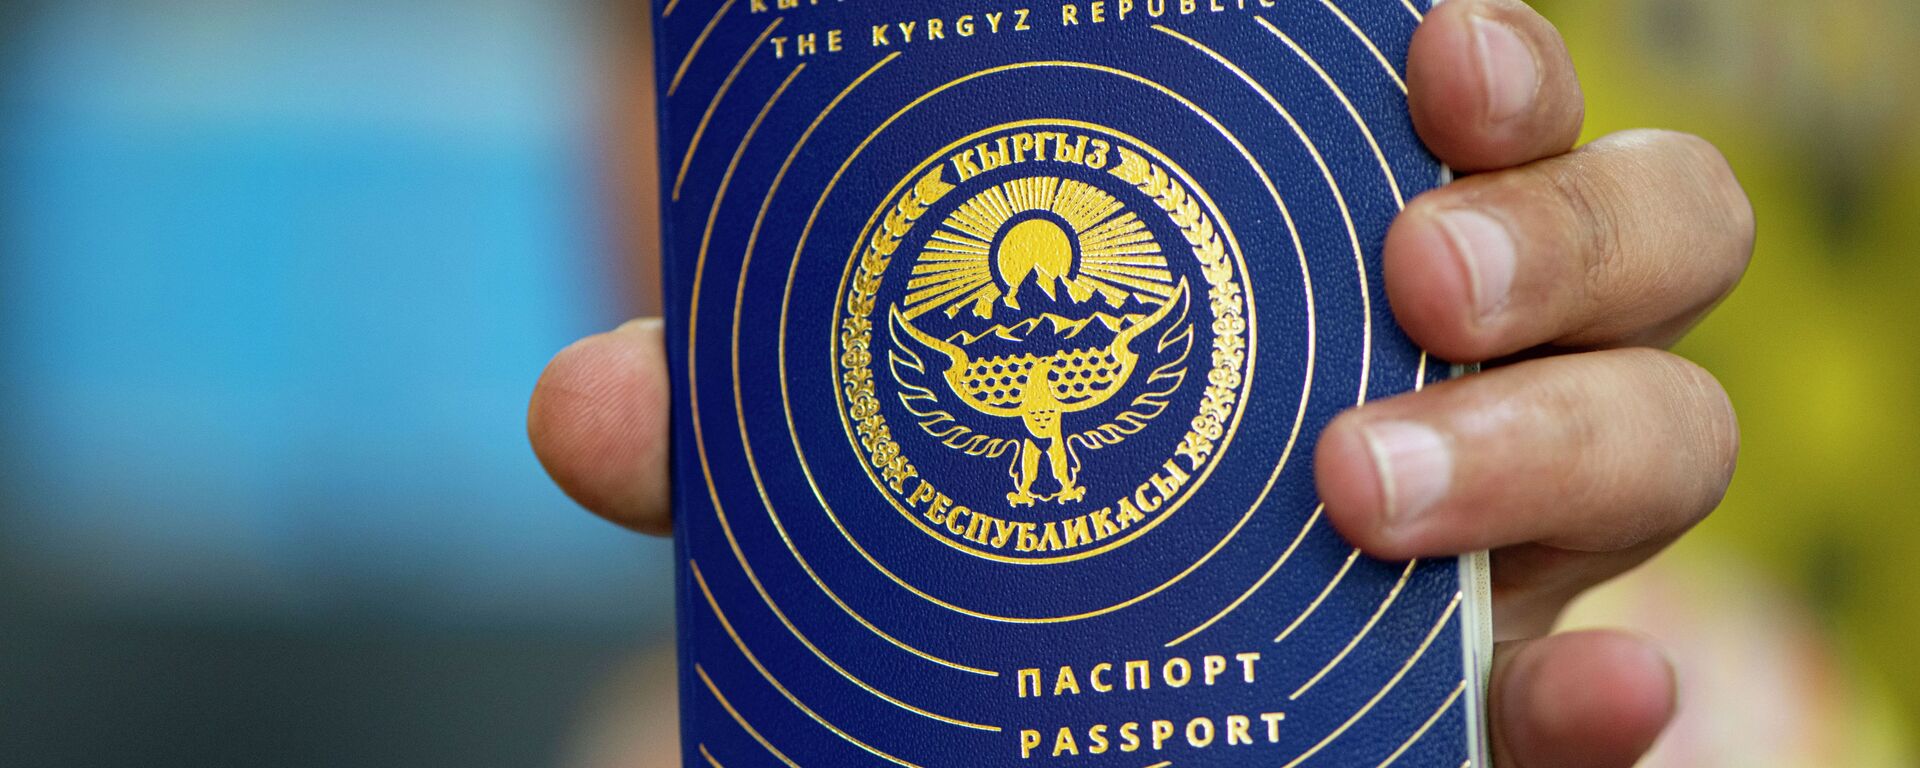 Кыргызстандын жаранынын паспорту. Архив - Sputnik Кыргызстан, 1920, 24.12.2021